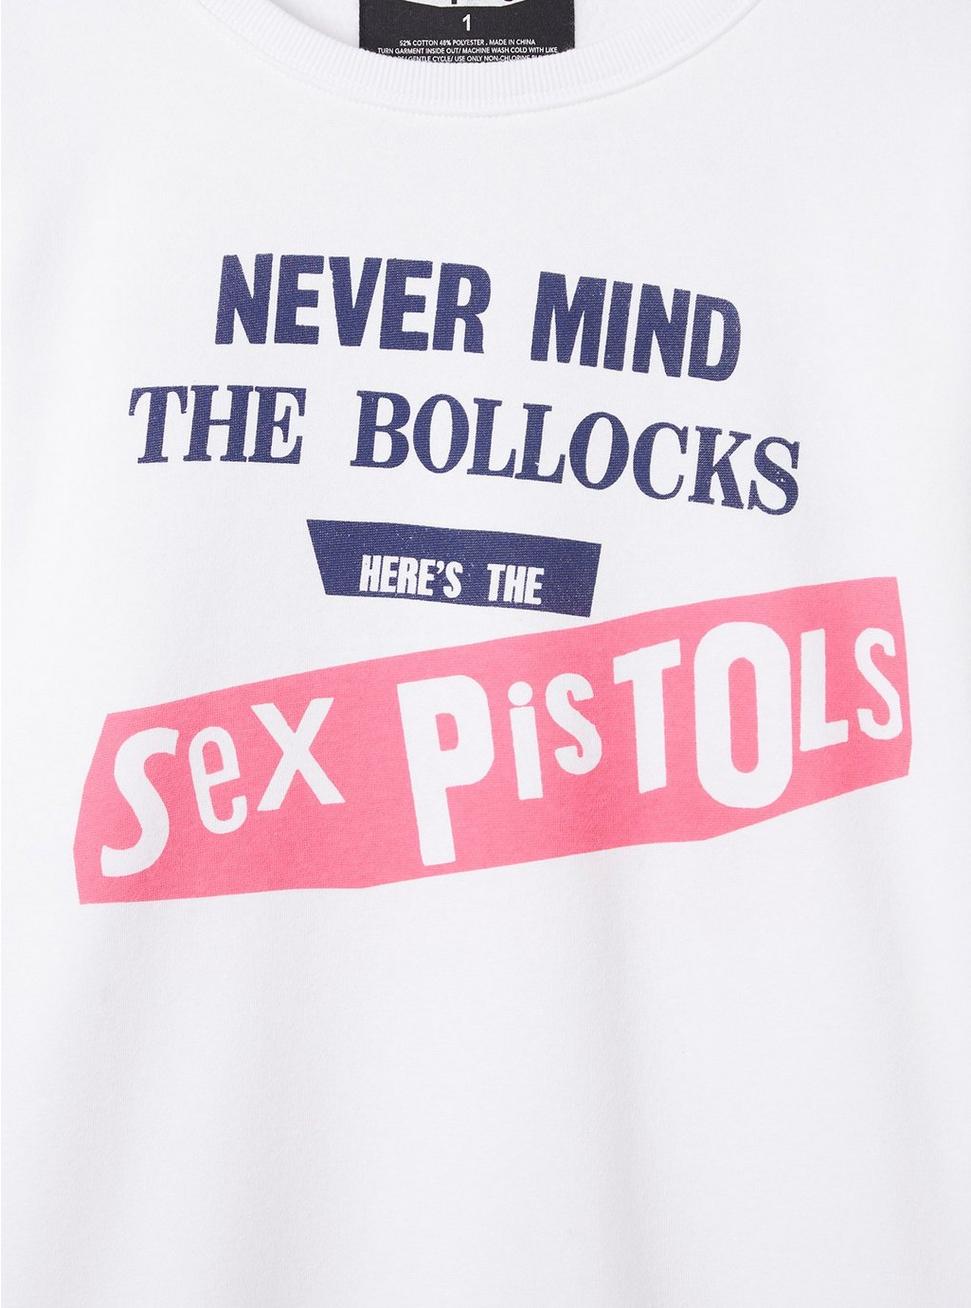 Plus Size Sex Pistols Cozy Fleece Crew Neck Sweatshirt, BRIGHT WHITE, alternate